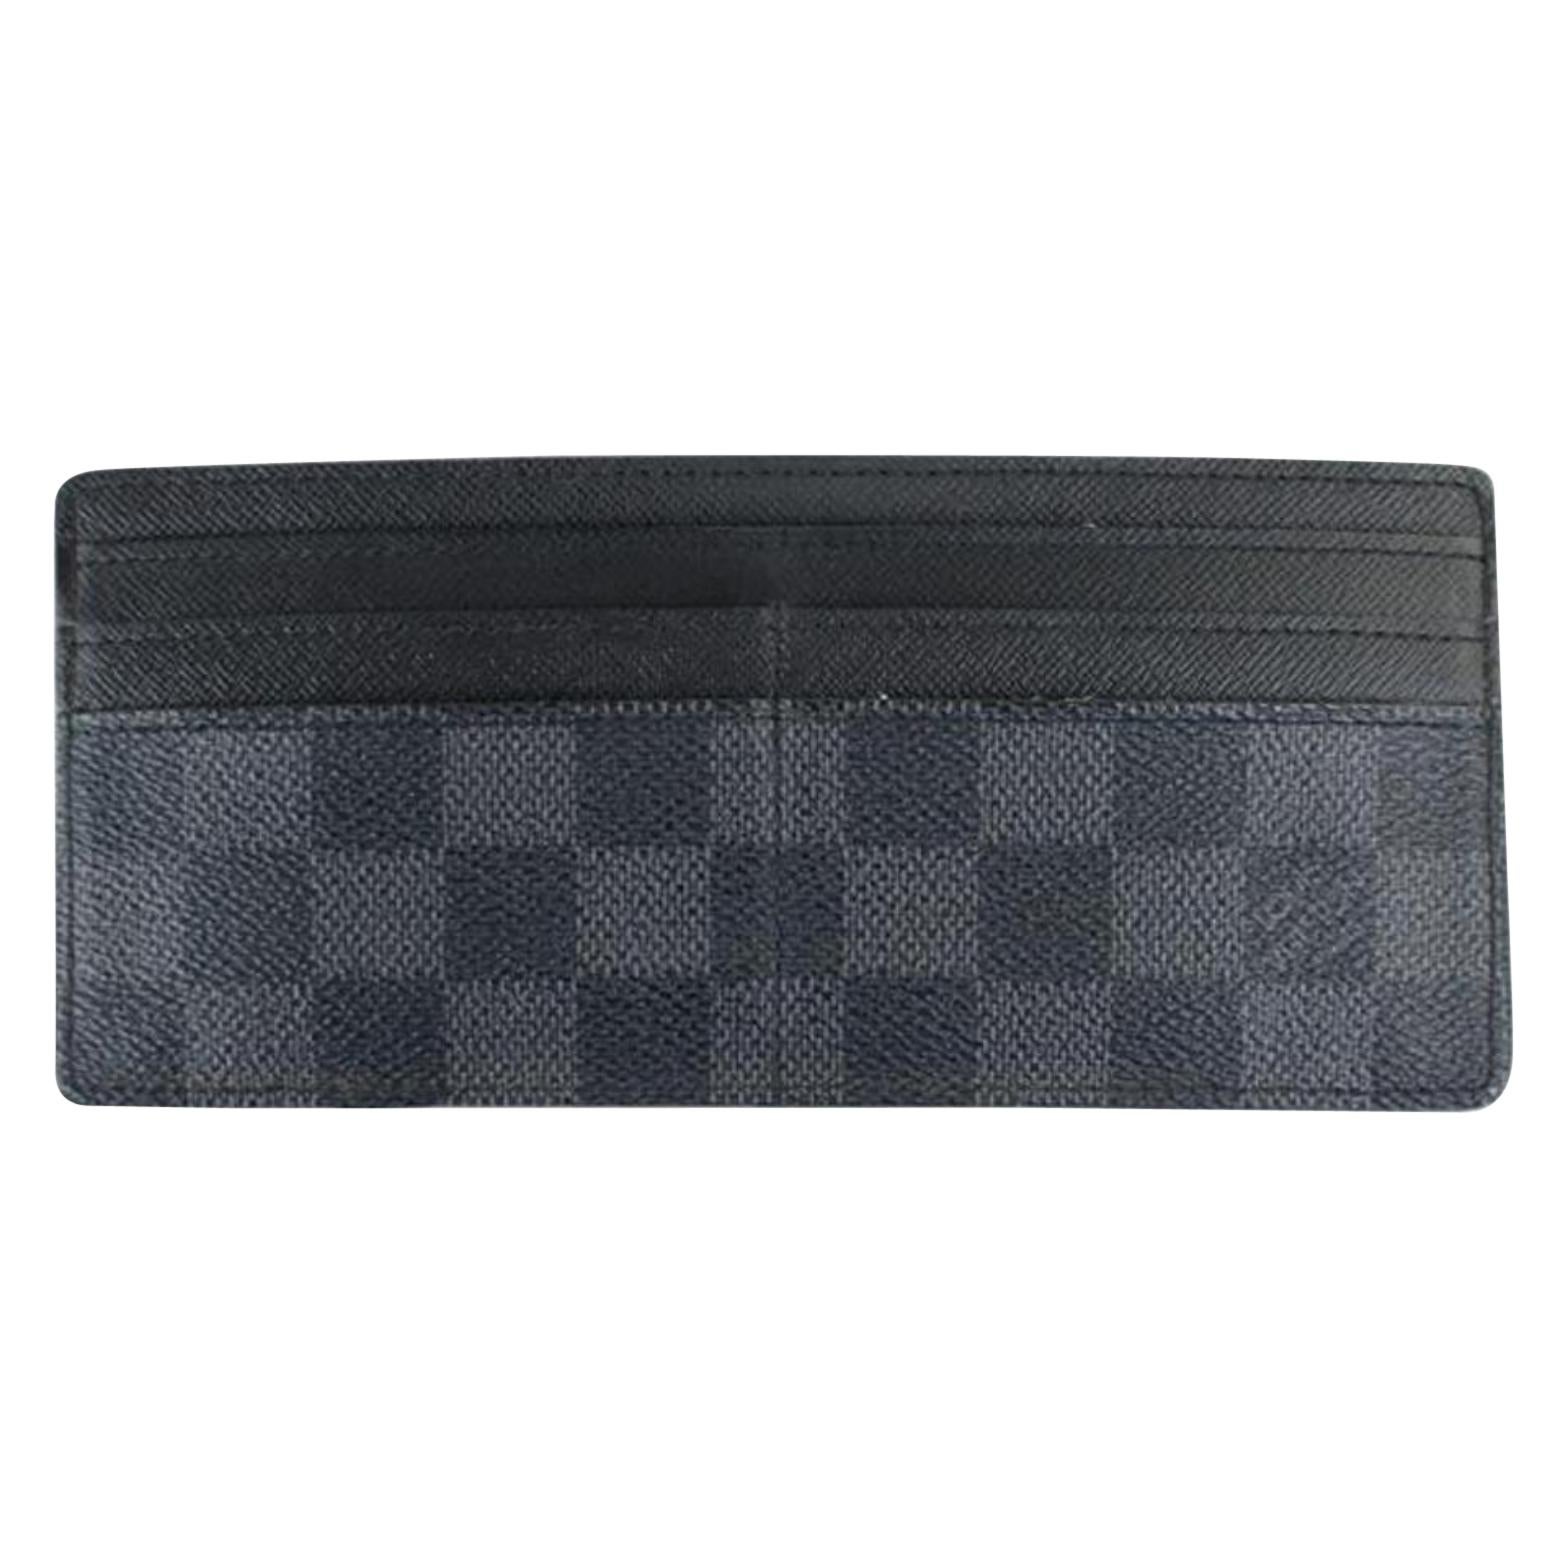 Louis Vuitton Black Damier Graphite Card Case 99lt8 Wallet For Sale